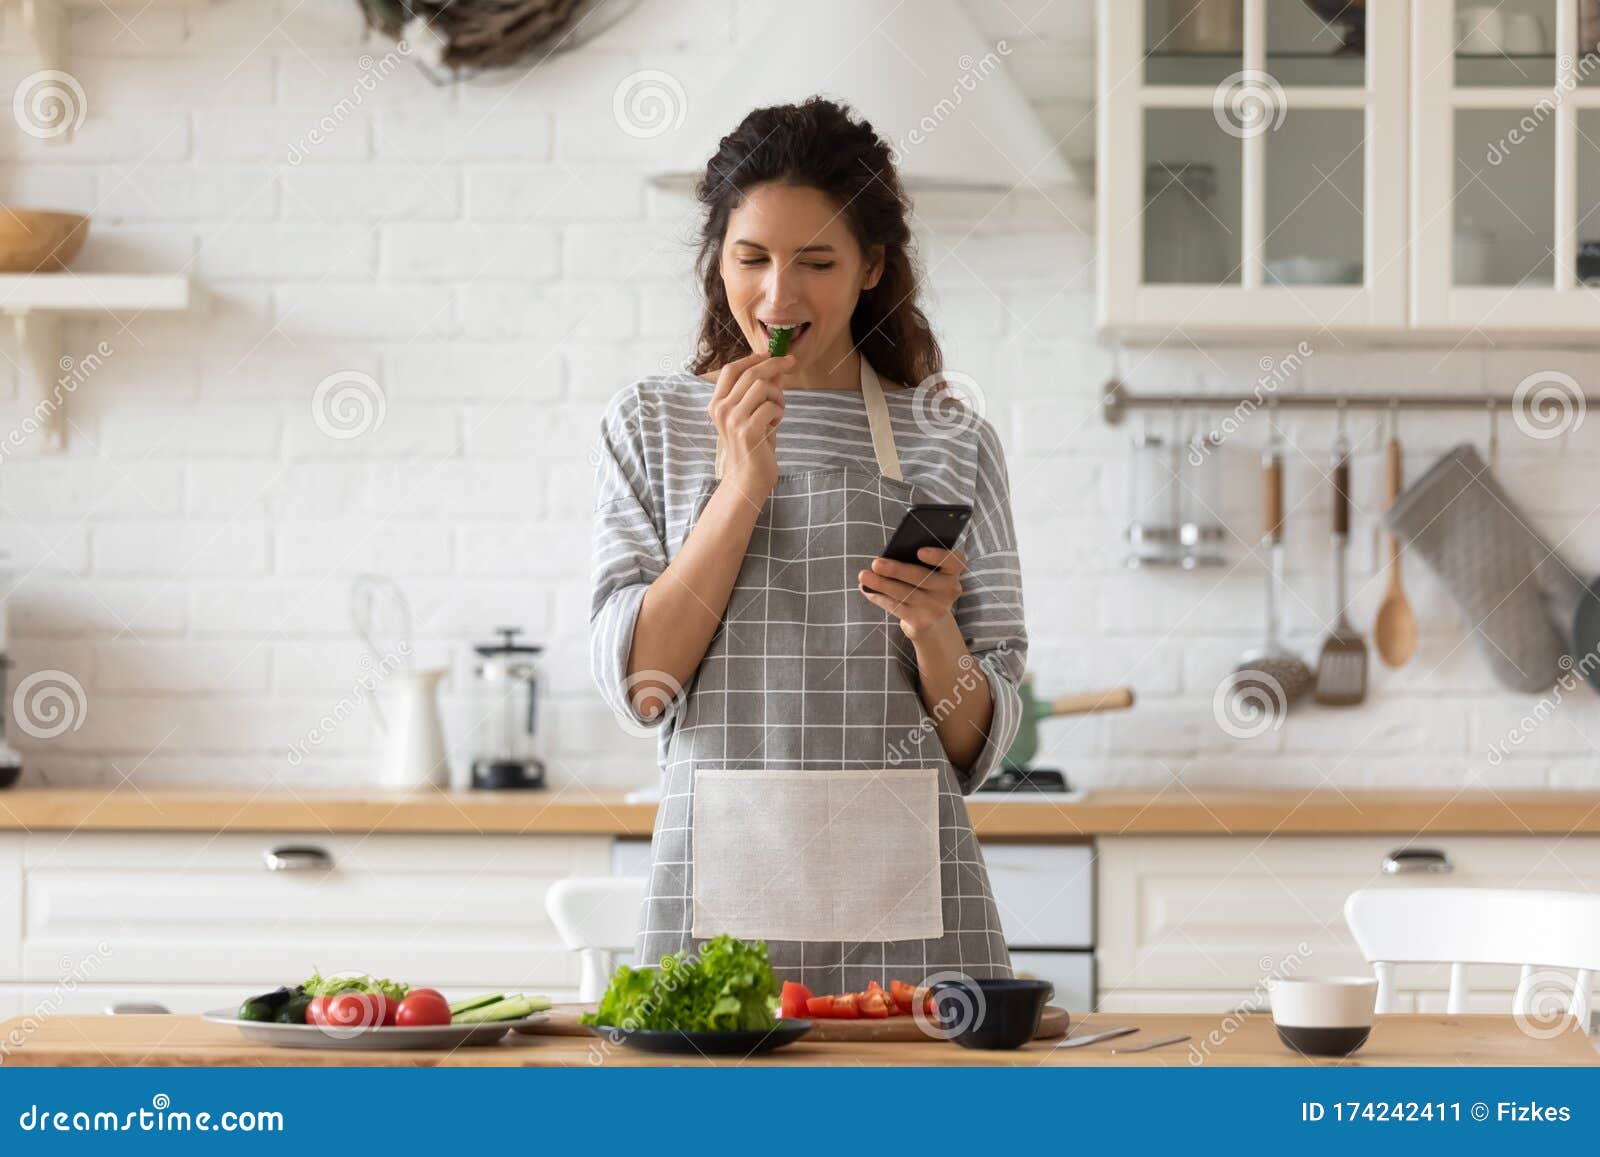 厨房人物素材-厨房人物图片-厨房人物素材图片下载-觅知网